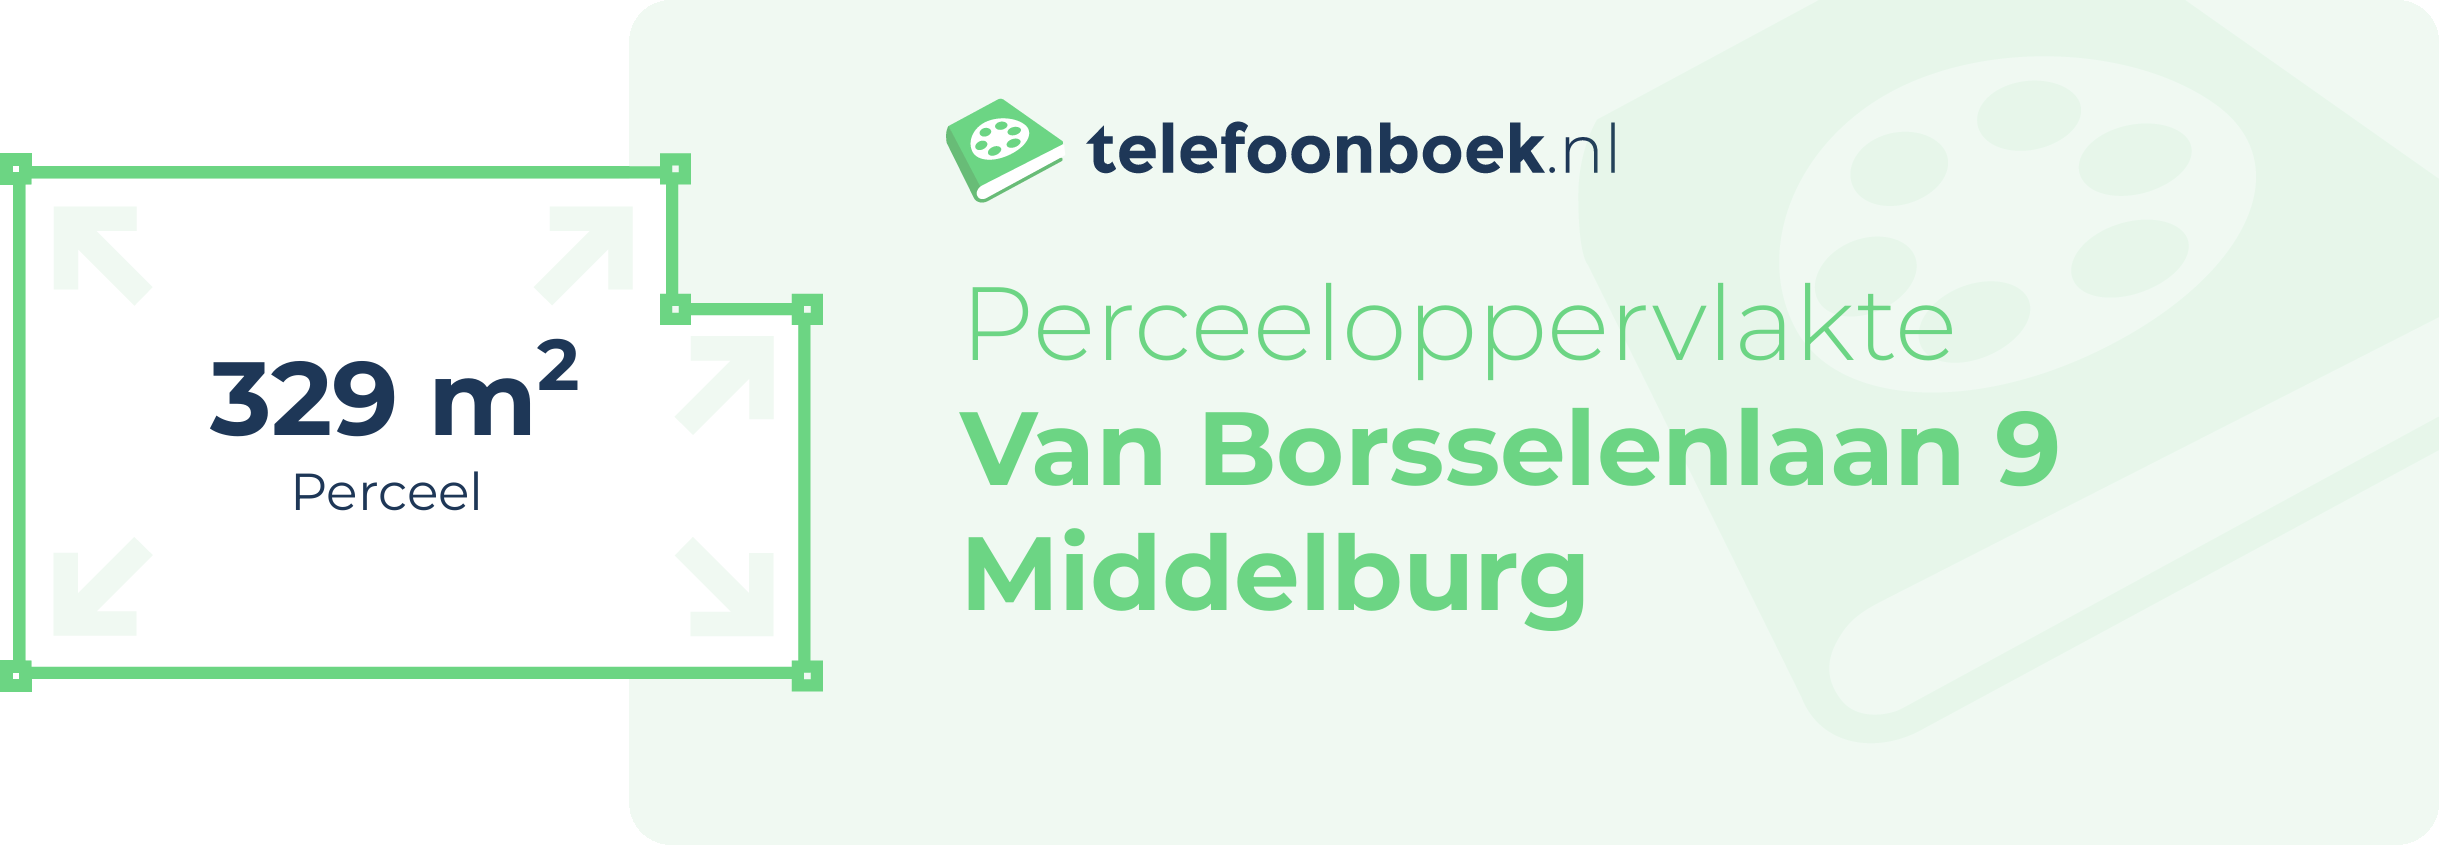 Perceeloppervlakte Van Borsselenlaan 9 Middelburg